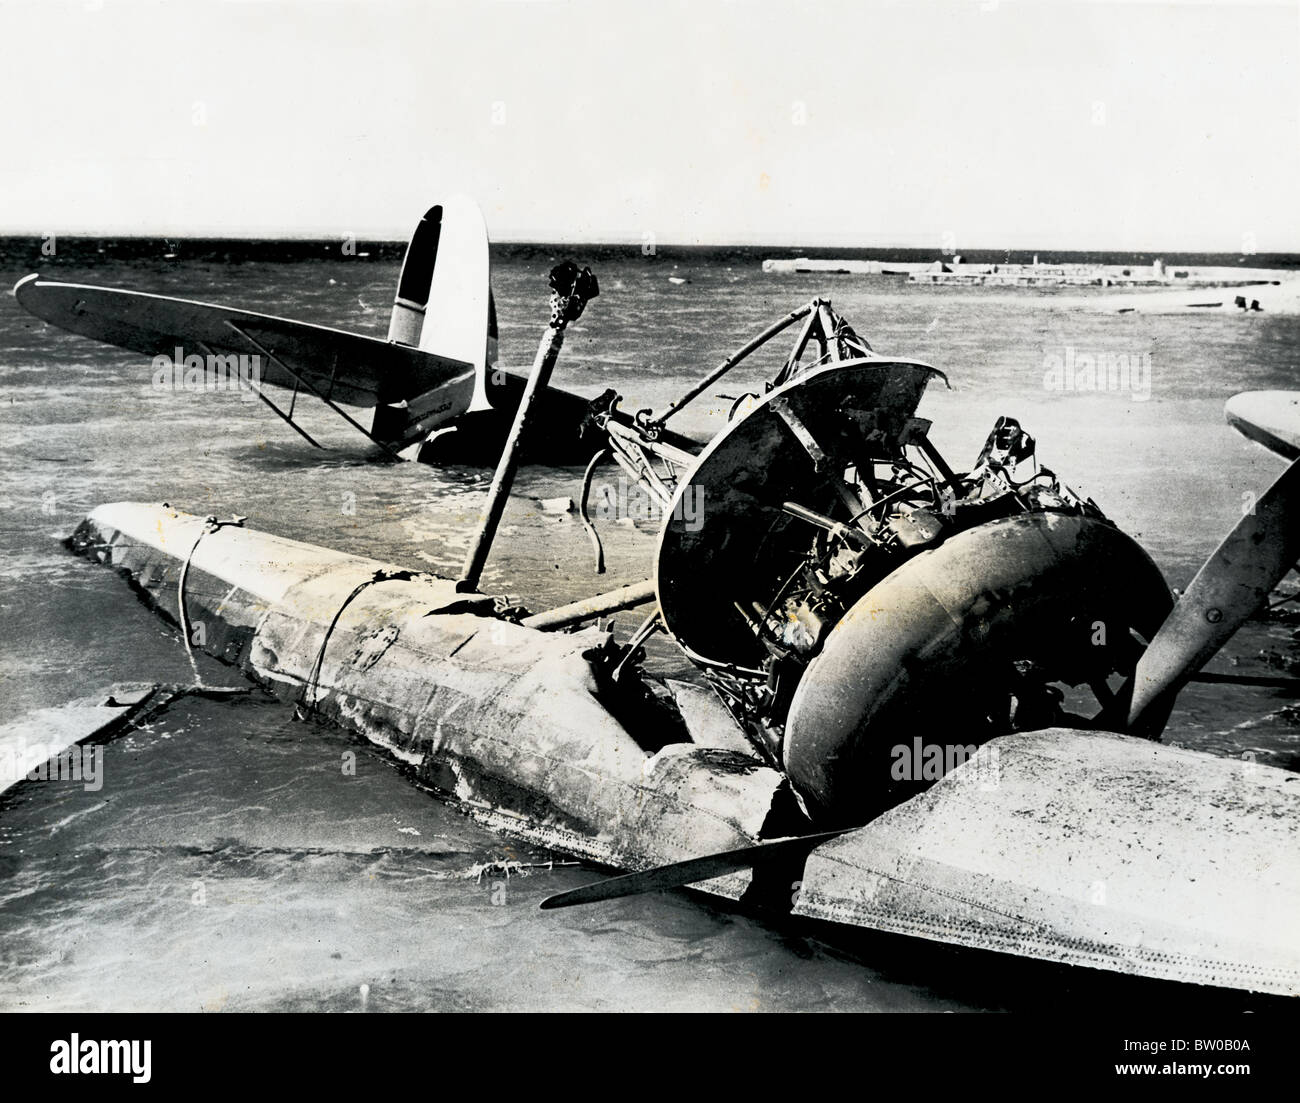 Nahaufnahme eines der Flugzeuge des italienischen Seaplane Base Bomba, Libyen durch RAF nach Besetzung durch General Wavell Armee zerstört Stockfoto